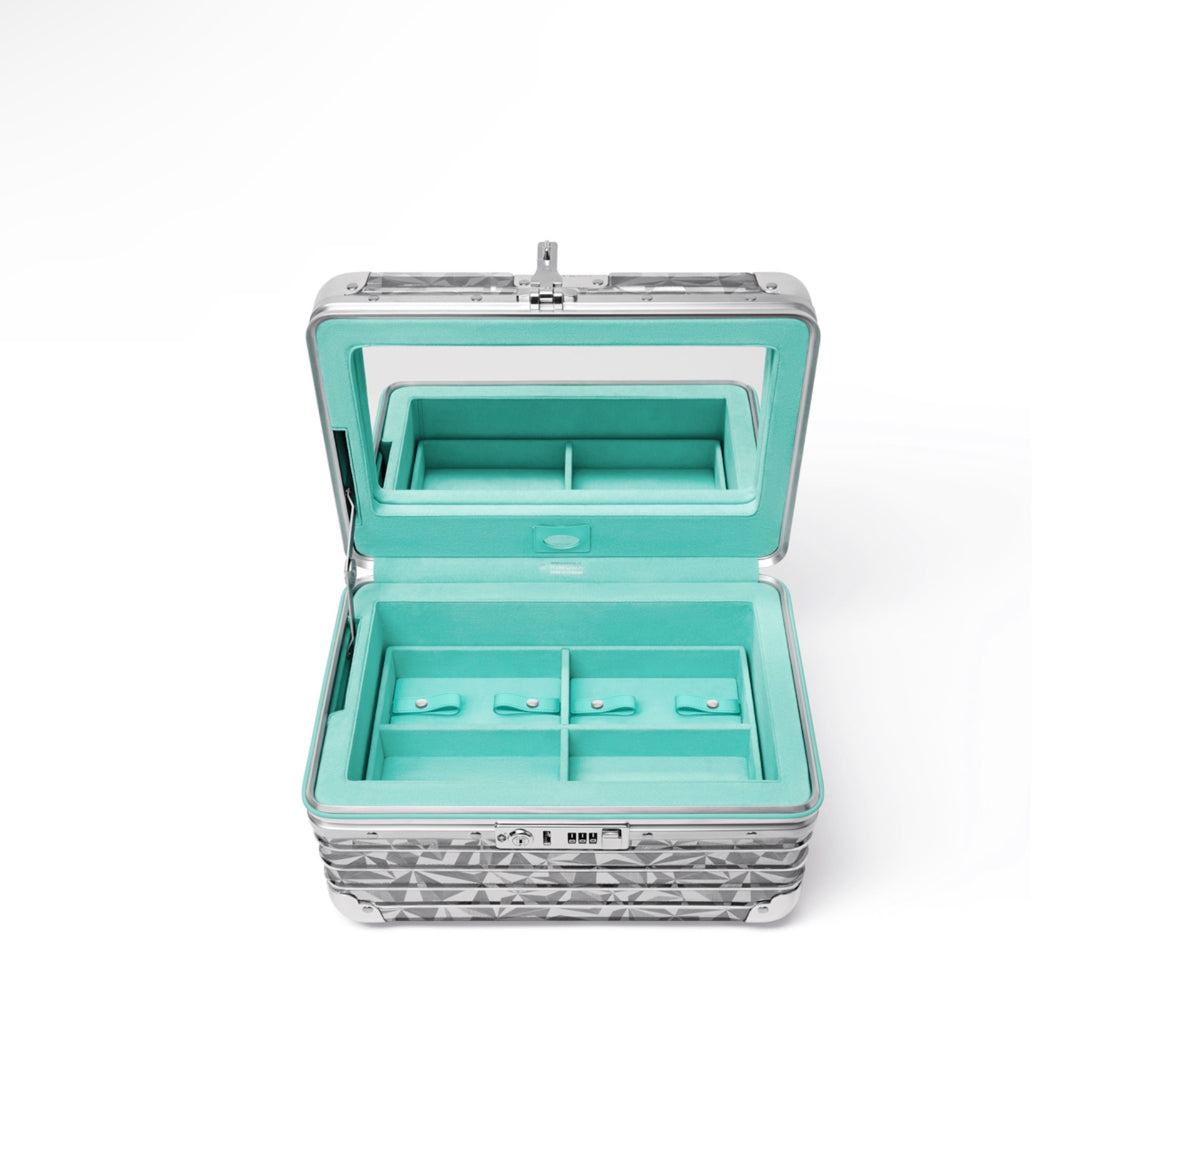 The RIMOWA x Tiffany & Co. Collaboration — A Jewellery Case, Cabin